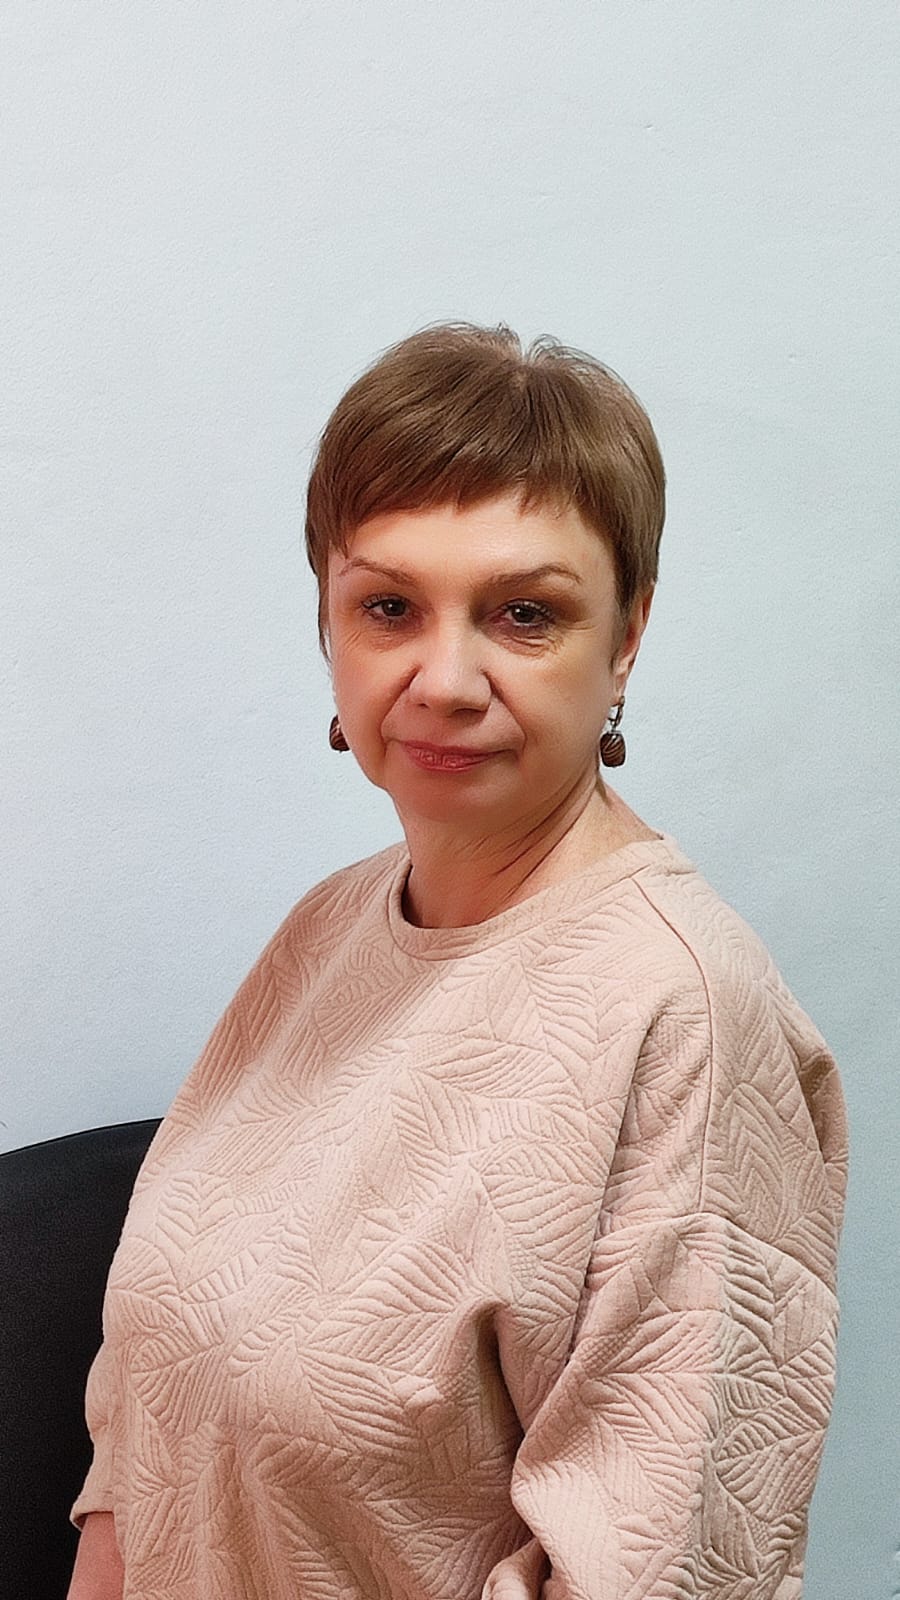 Педагогический работник Лайкова Жанна Васильевна.